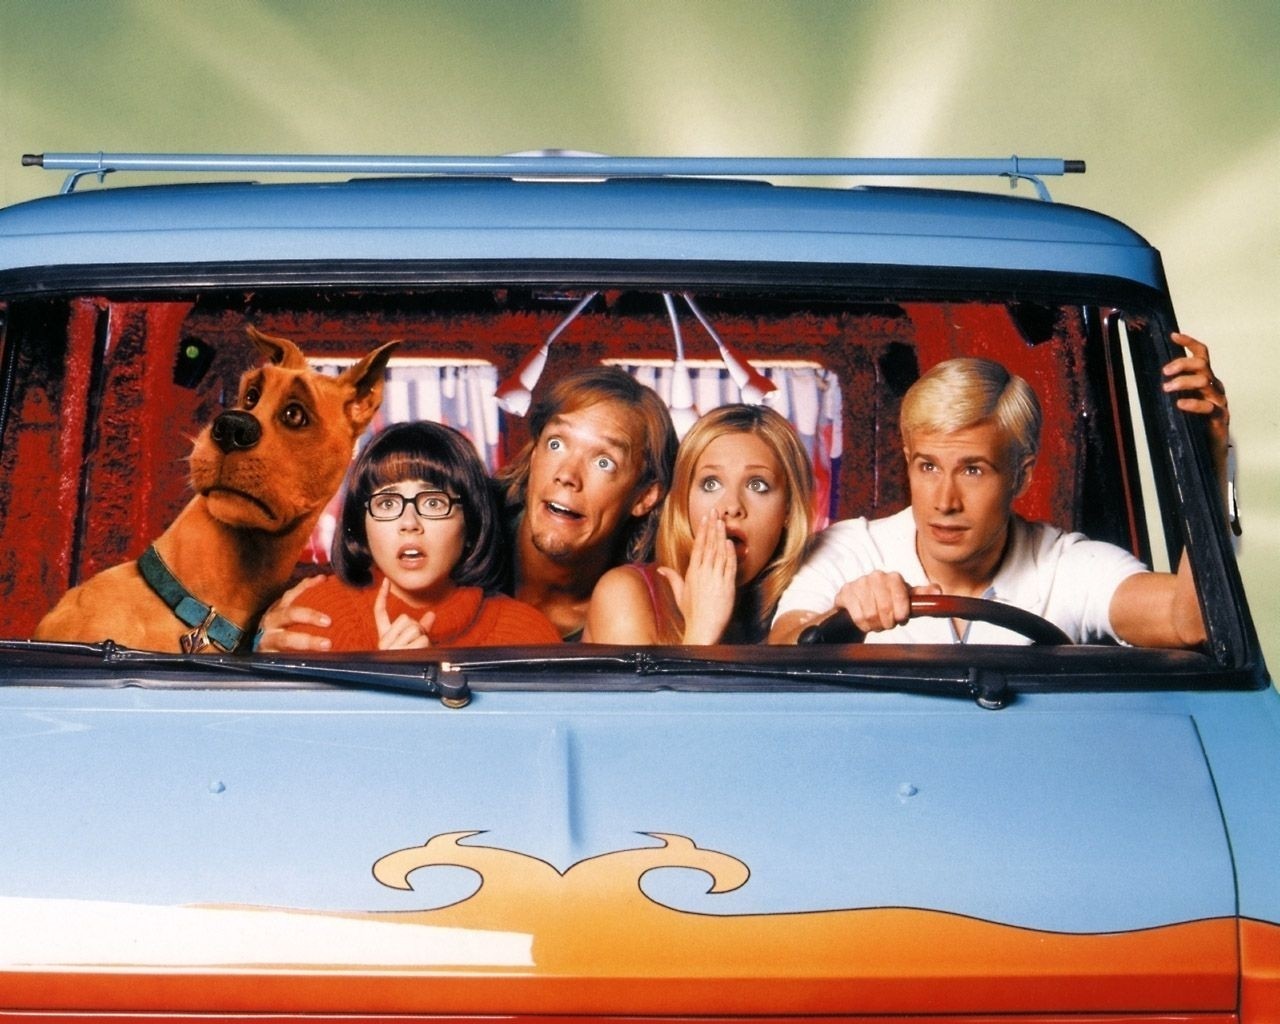 Scooby Doo (2002)